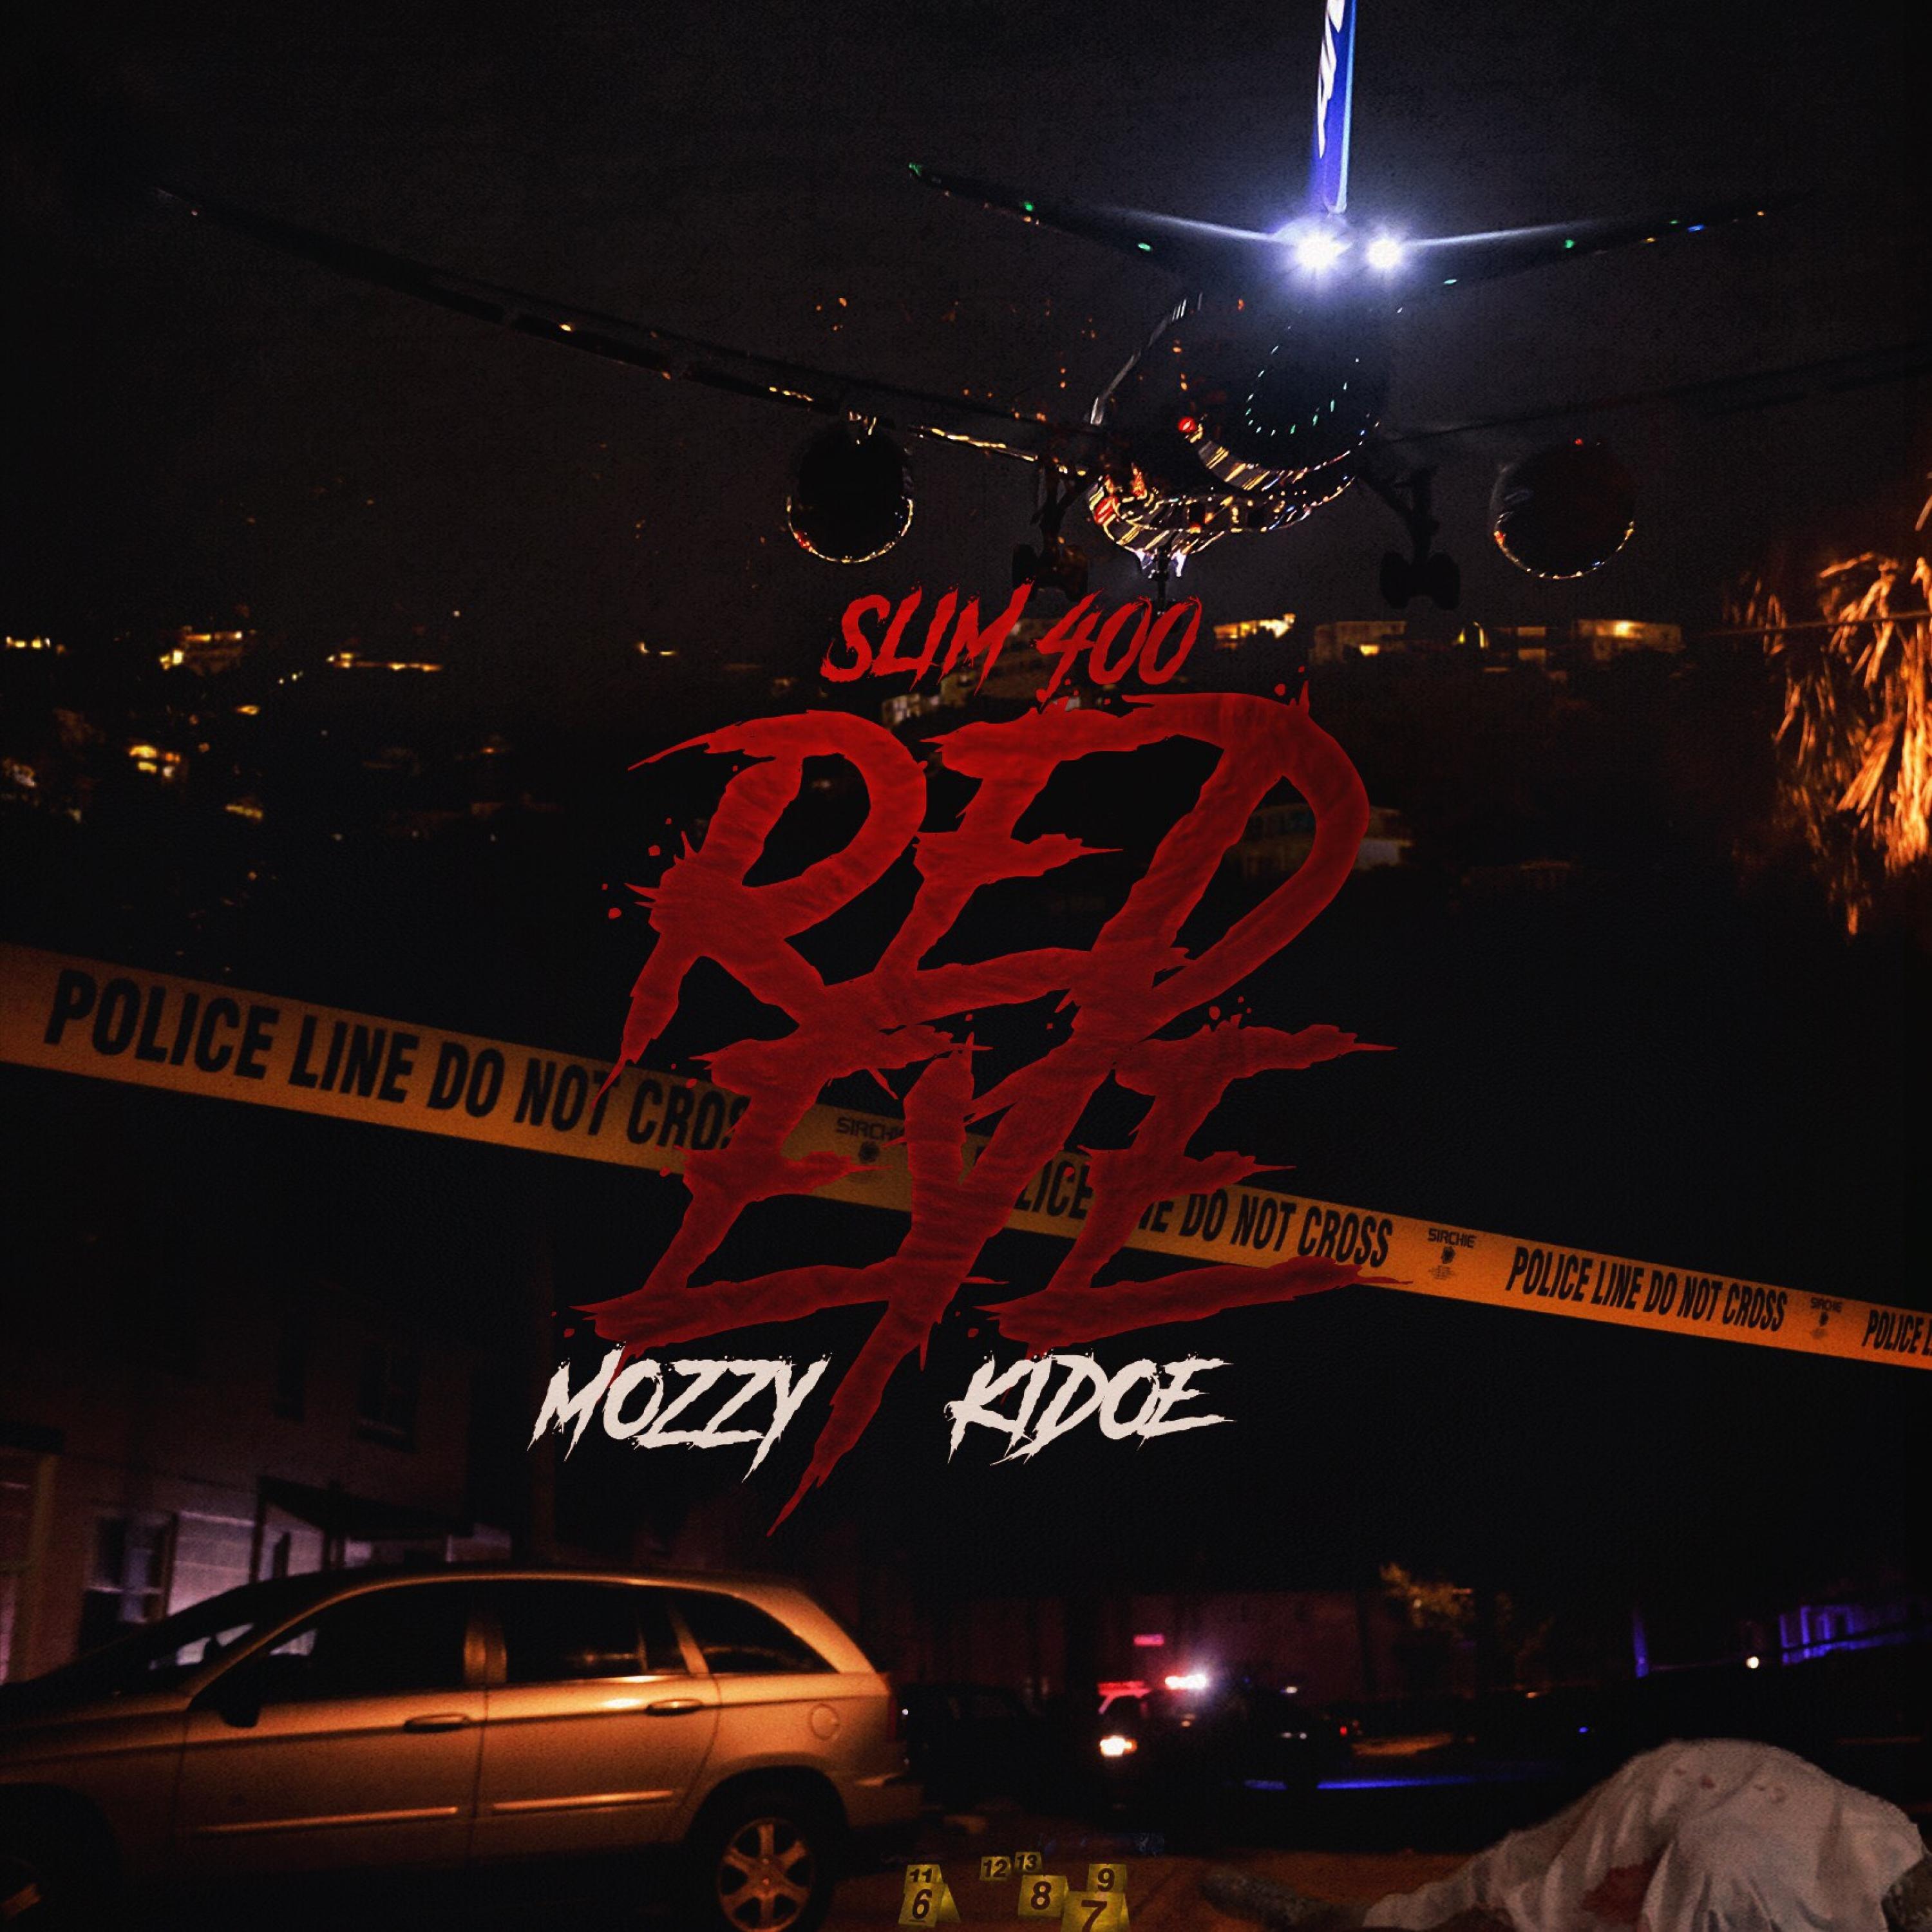 Red Eye (feat. Mozzy & Kidoe)